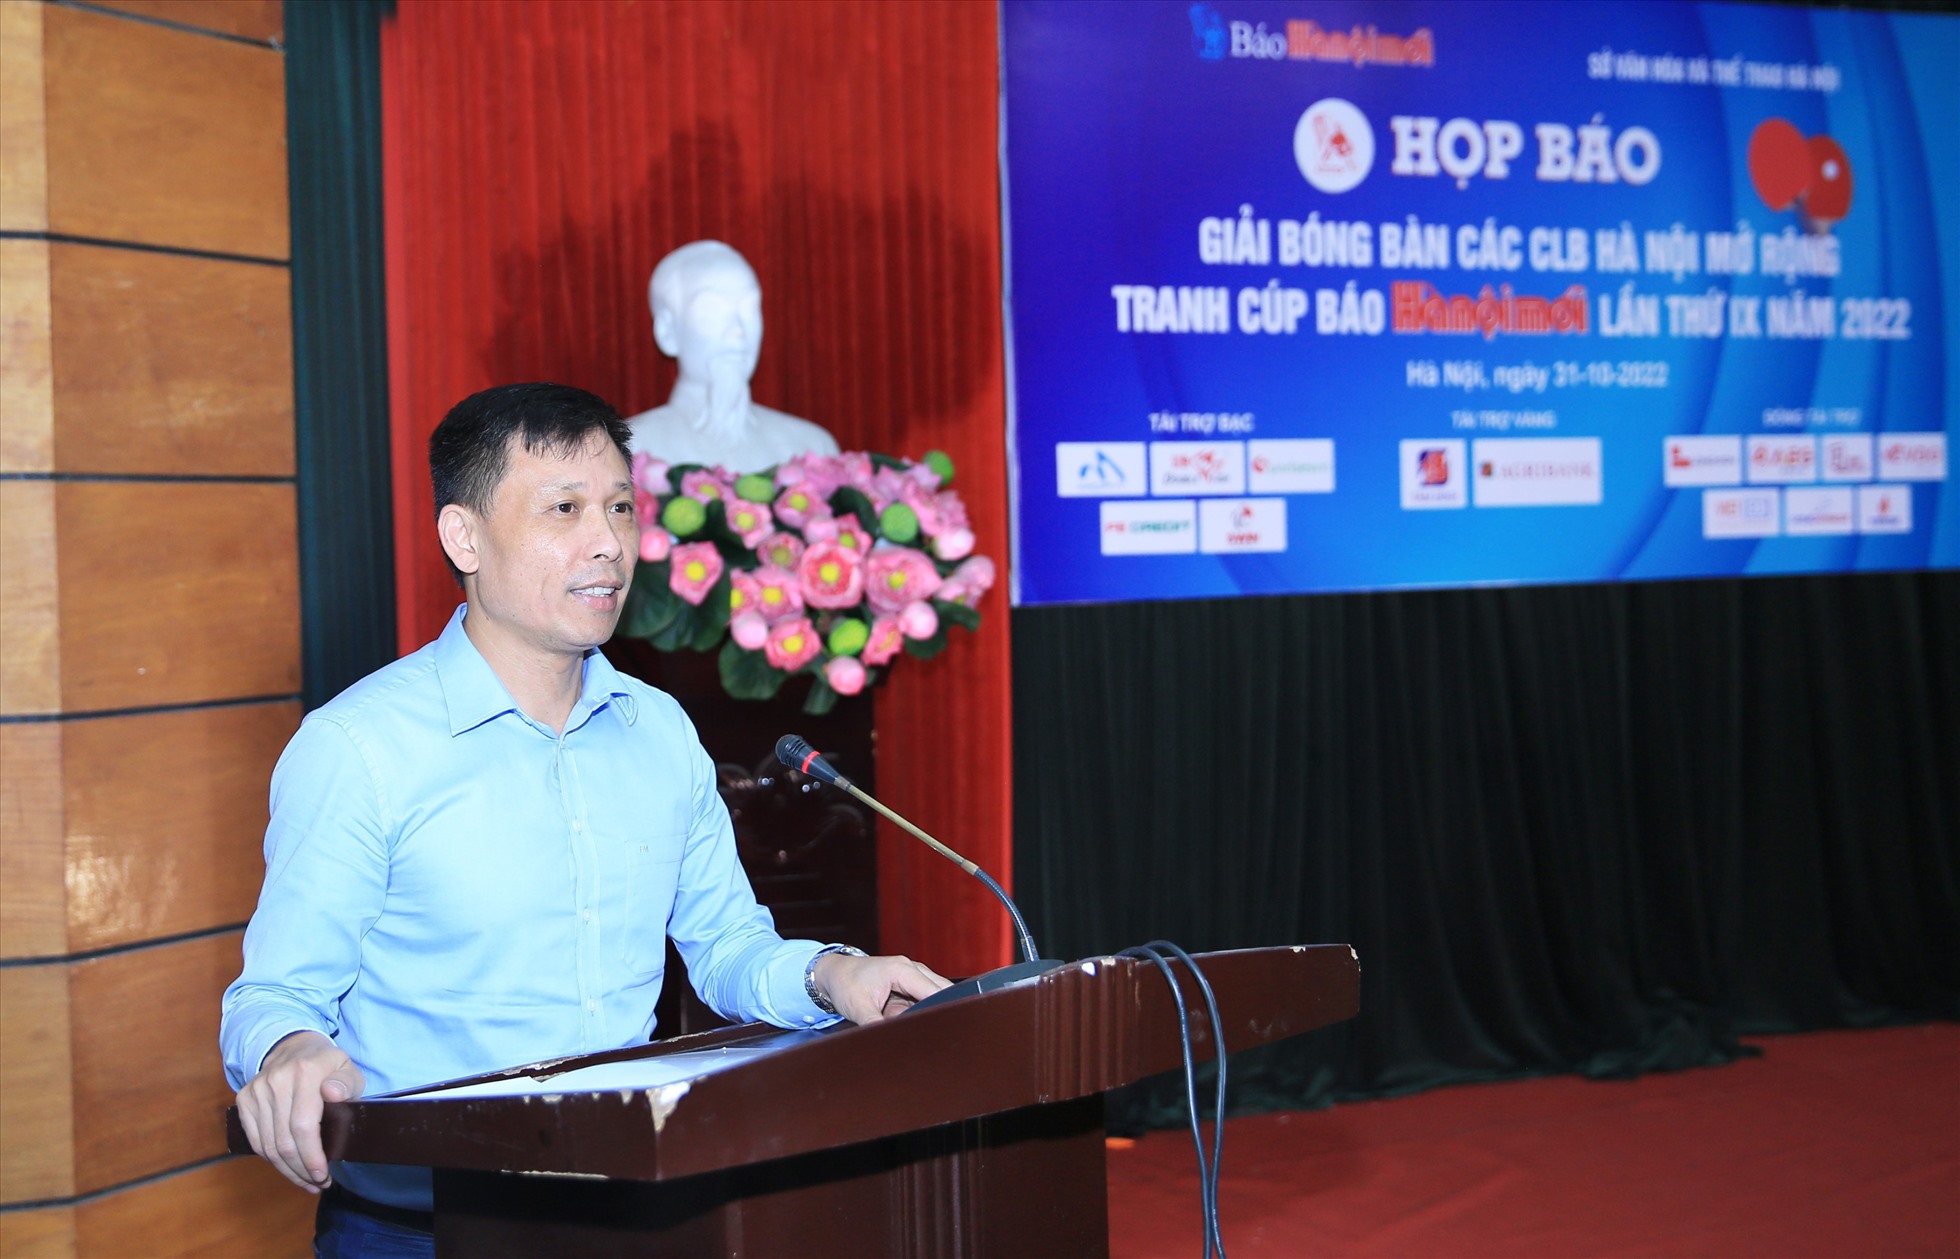 Ông Nguyễn Thành Lợi - Tổng biên tập Báo Hà Nội mới, Trưởng ban tổ chức giải -phát biểu trong buổi họp báo. Ảnh: TN